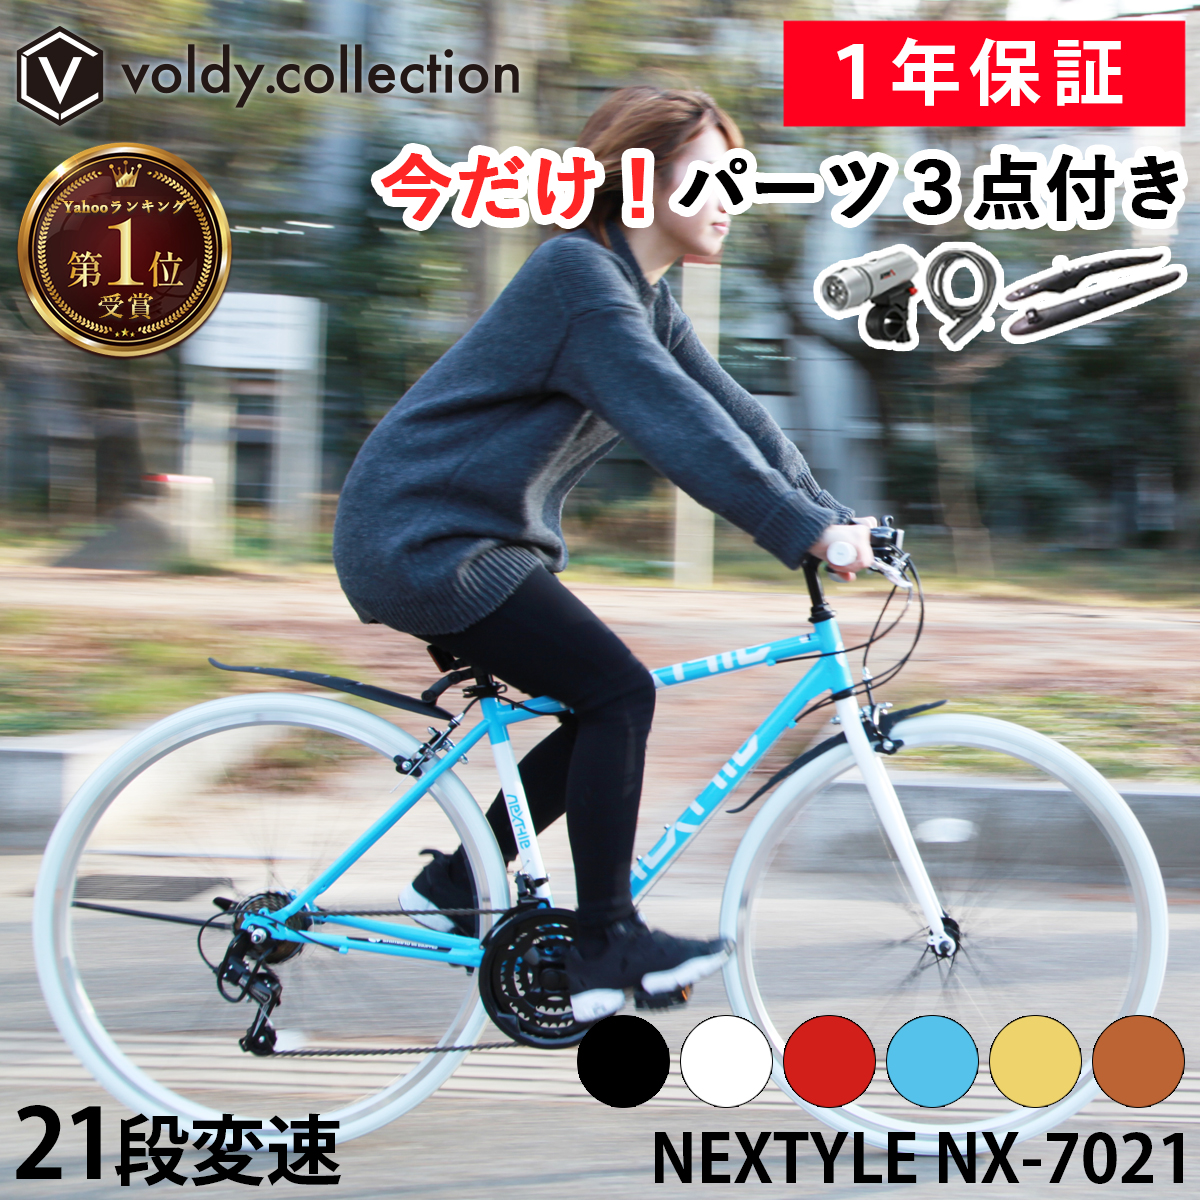 クロスバイク 自転車 泥除け・LEDライト・カギプレゼント 軽量 700×28C 21段変速 ネクスタイル NEXTYLE NX-7021-CR  初心者 女性 通勤 通学自転車 おしゃれ 女子